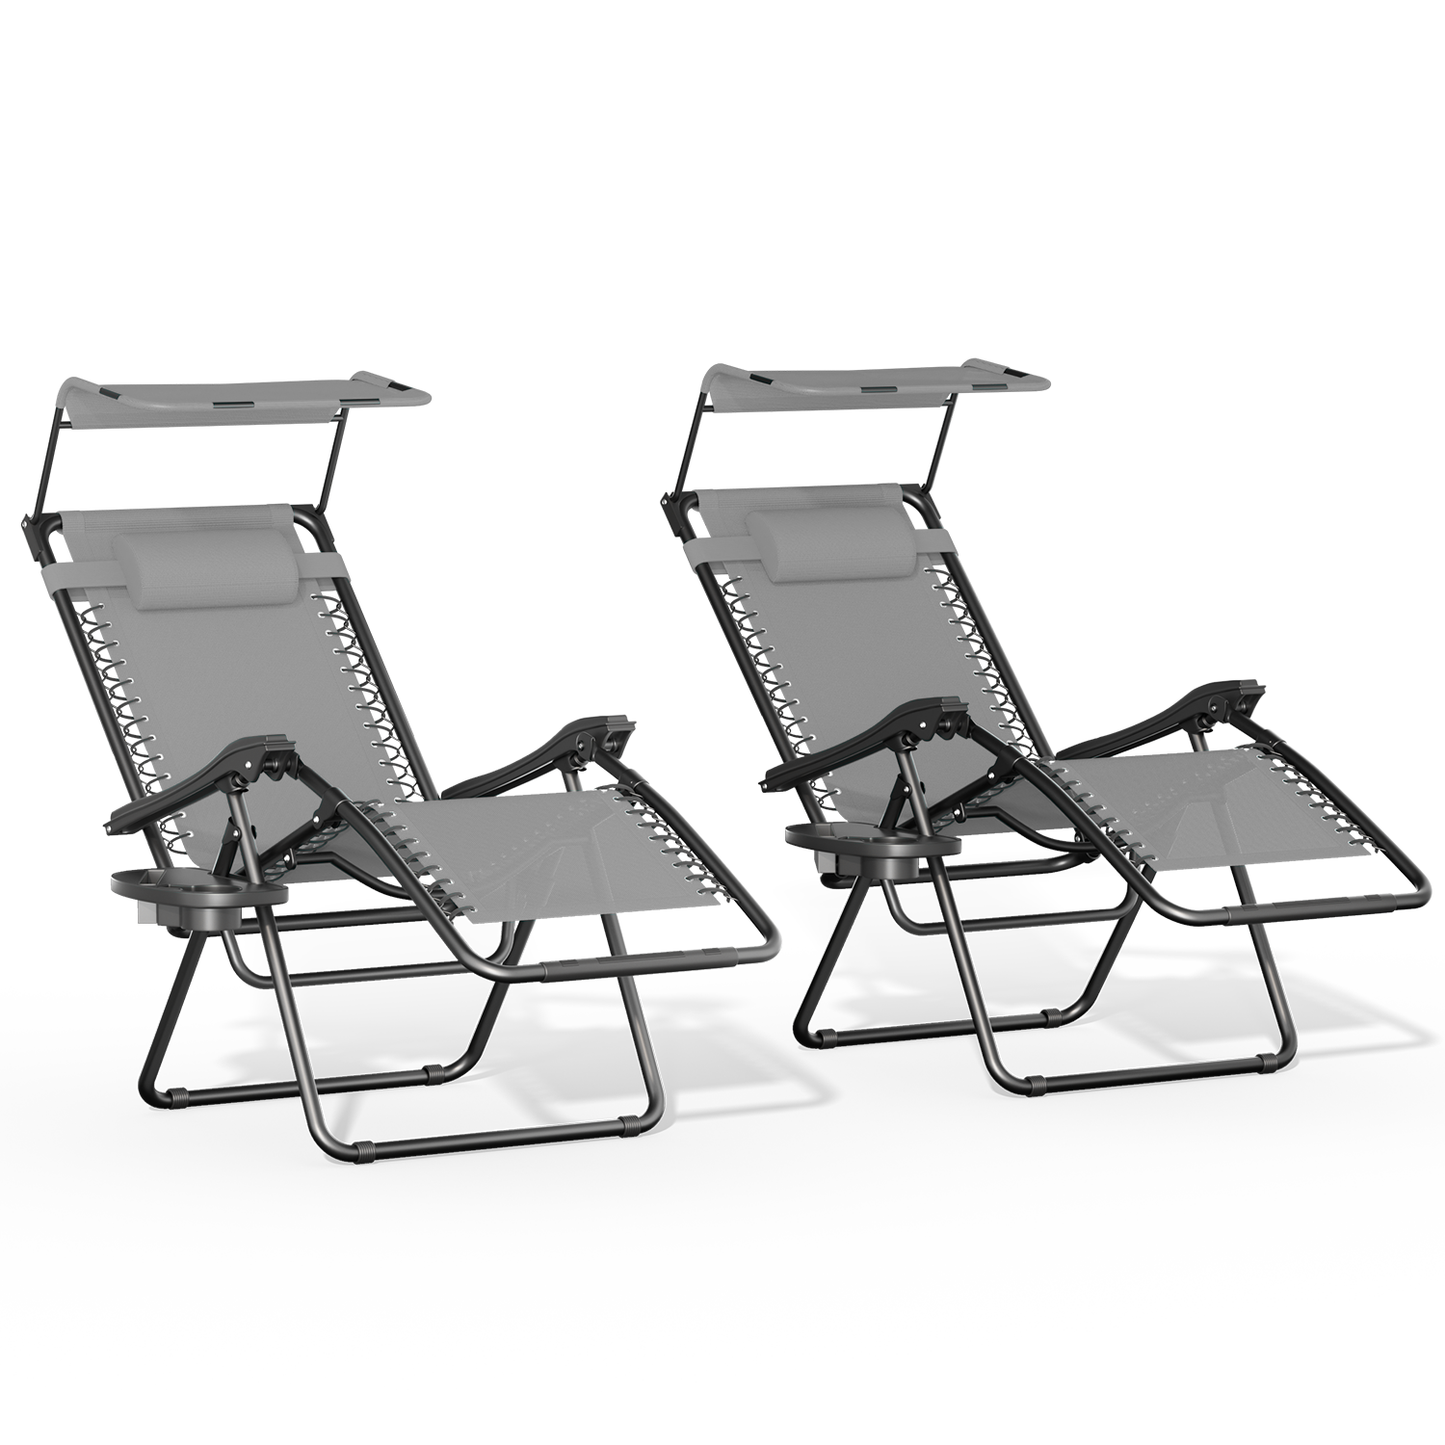 Set of 2 Zero Gravity Chair 20"x26"x43.5" - with Sunshade